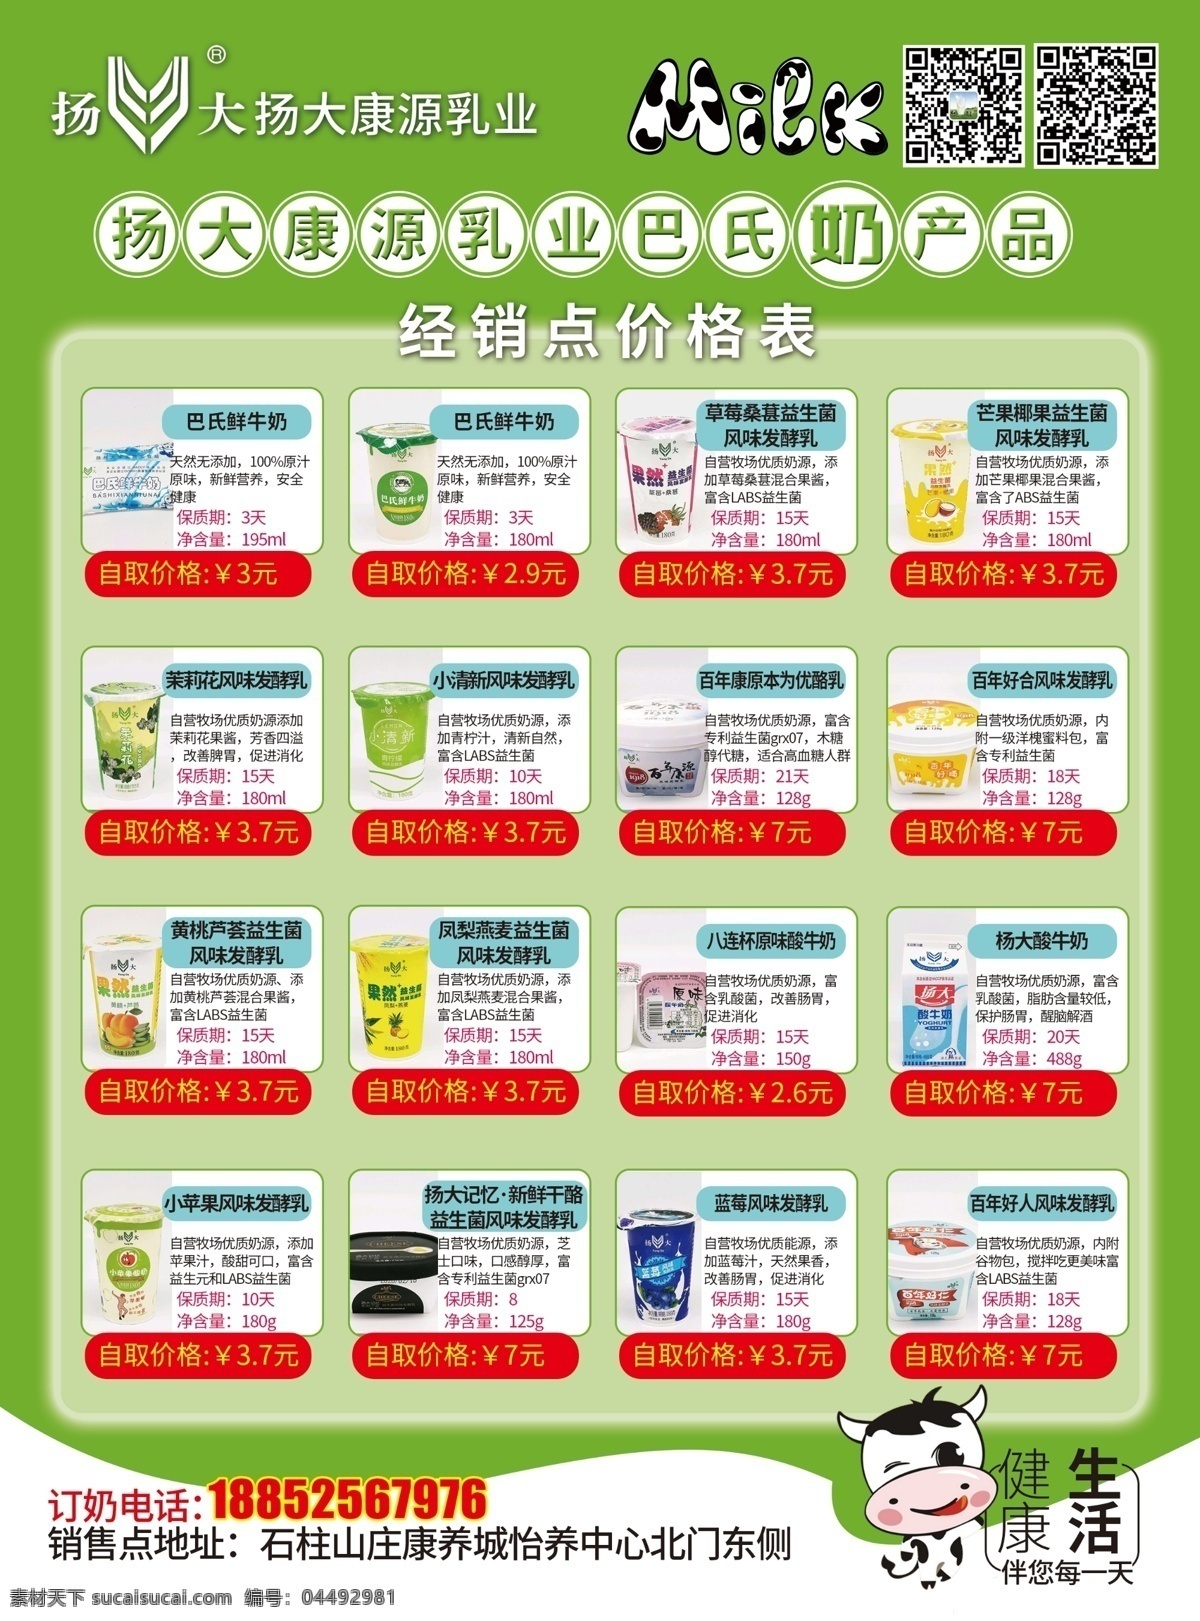 牛奶宣传单 牛奶 乳业宣传单 绿色宣传单 产品排版 多种产品排版 宣传单 dm宣传单